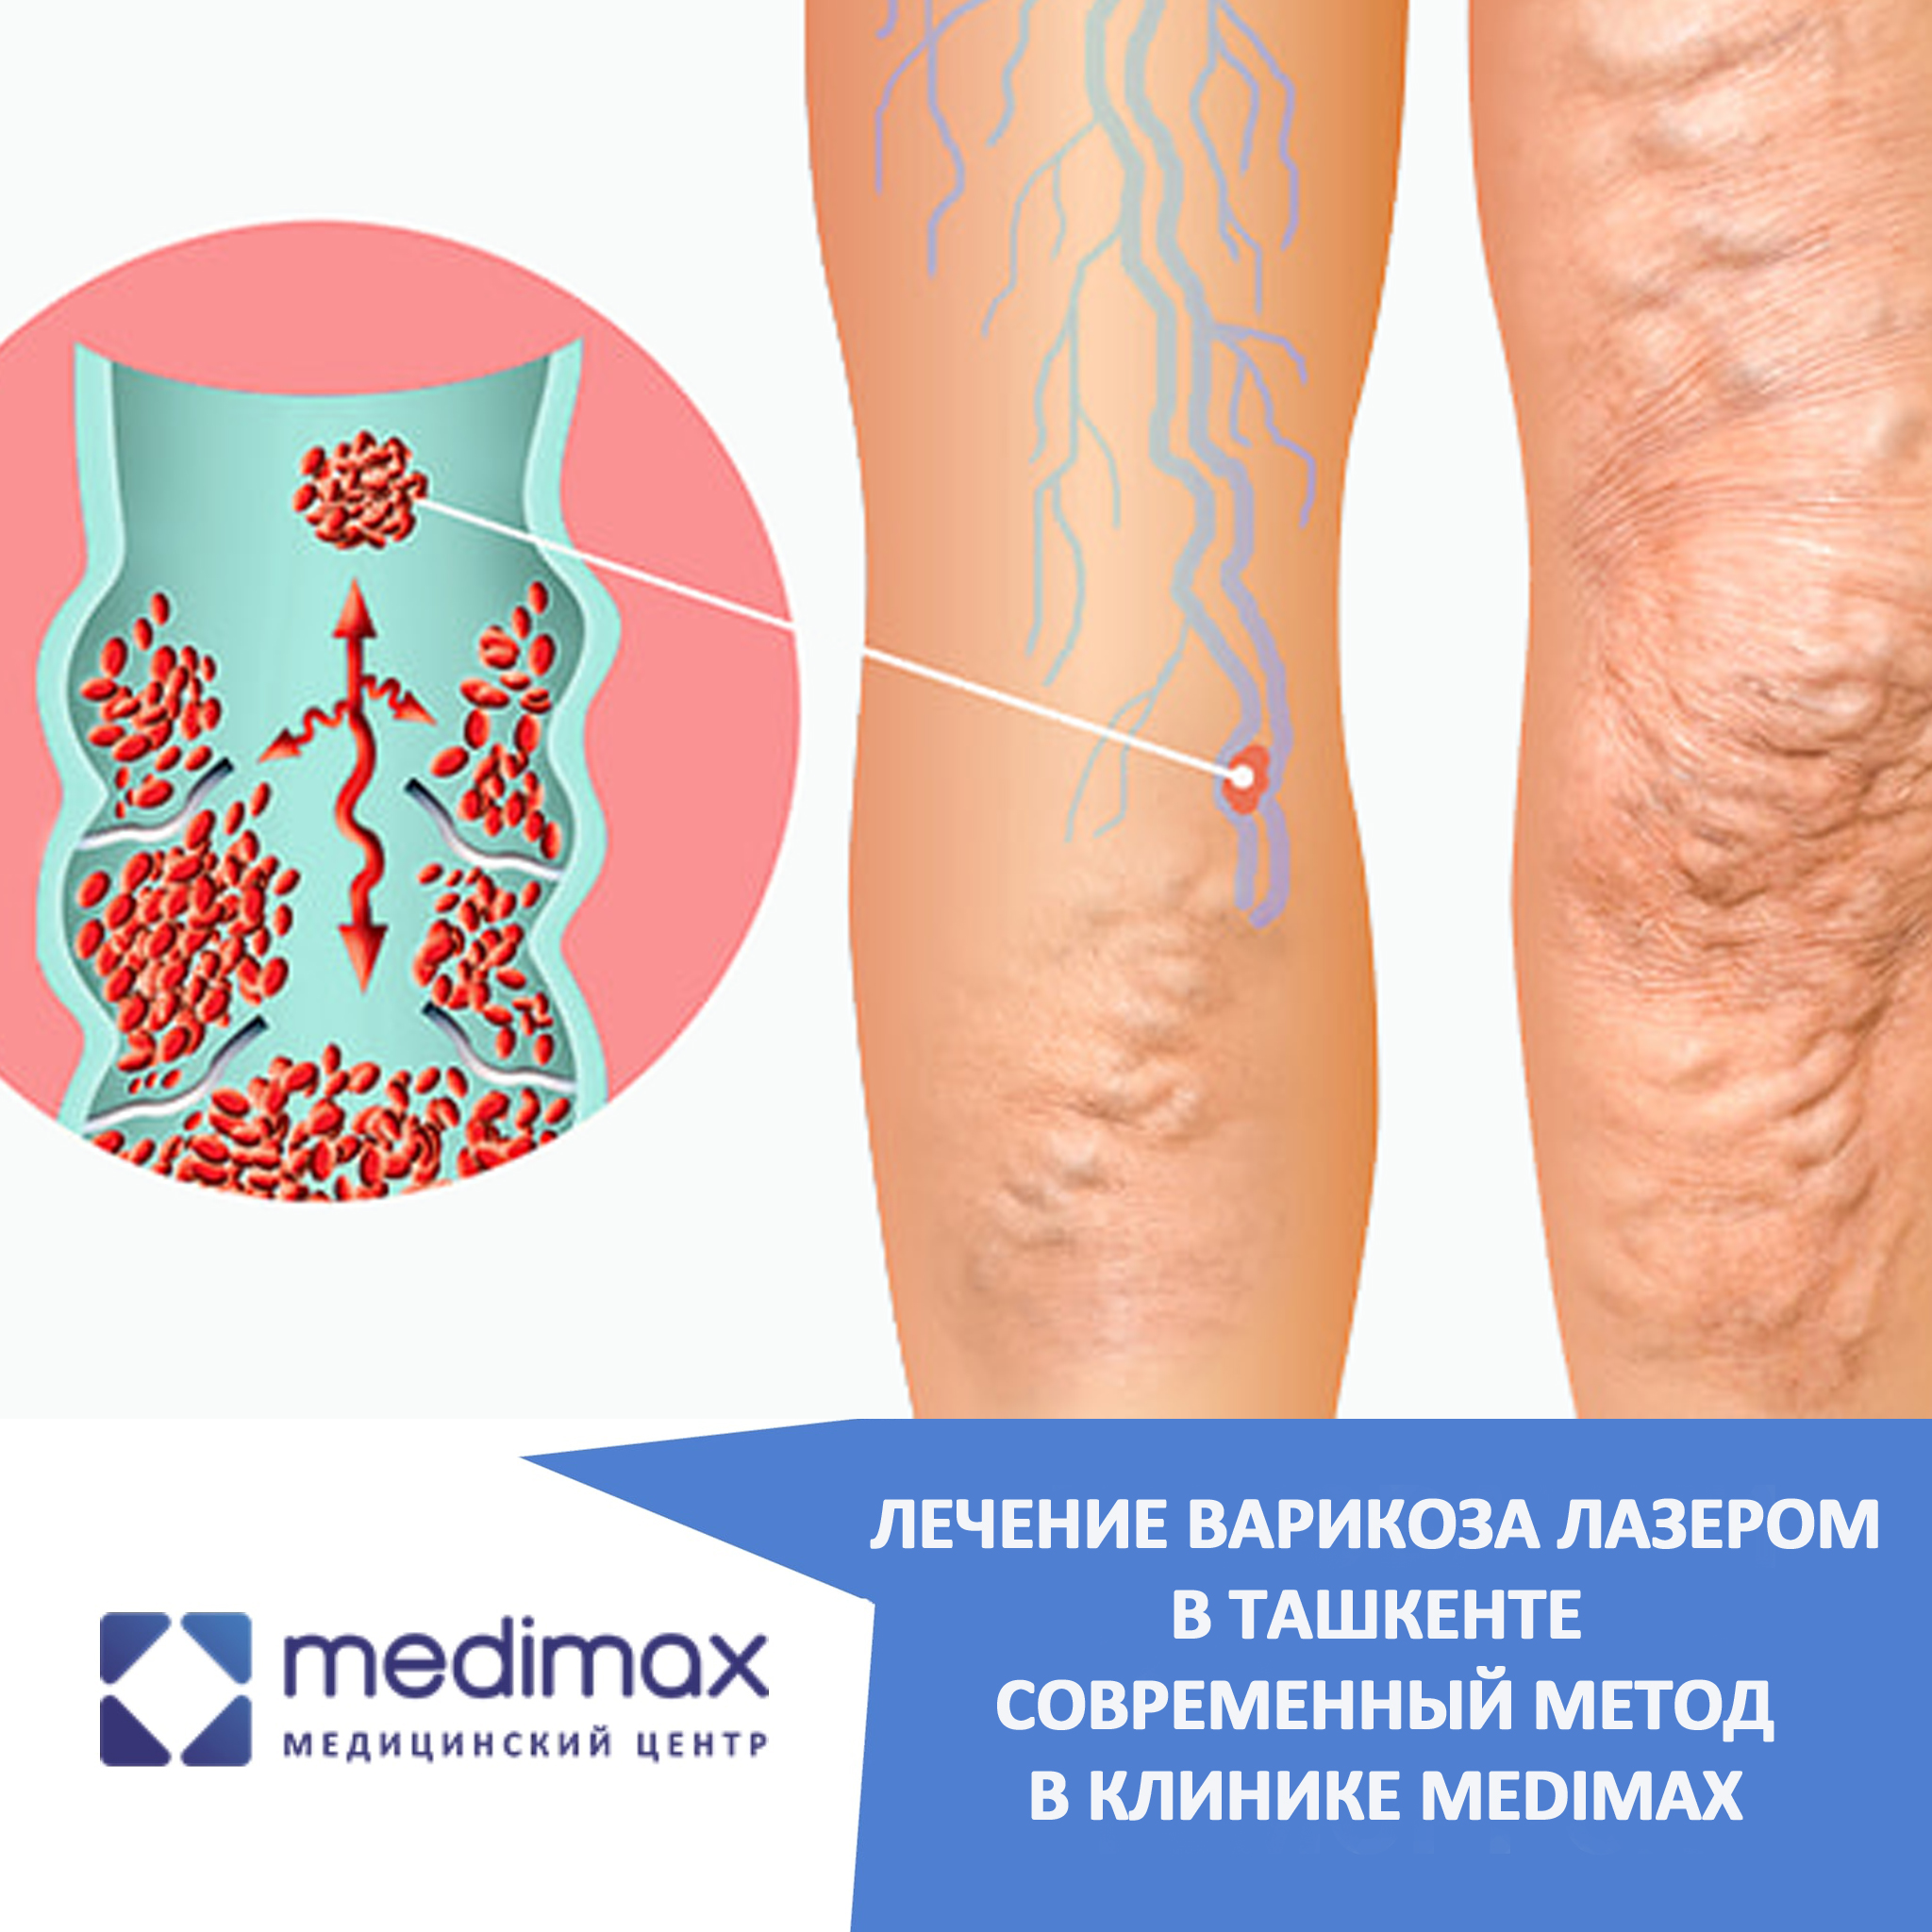 Лечение варикоза лазером в Ташкенте — современный метод в клинике Medimax